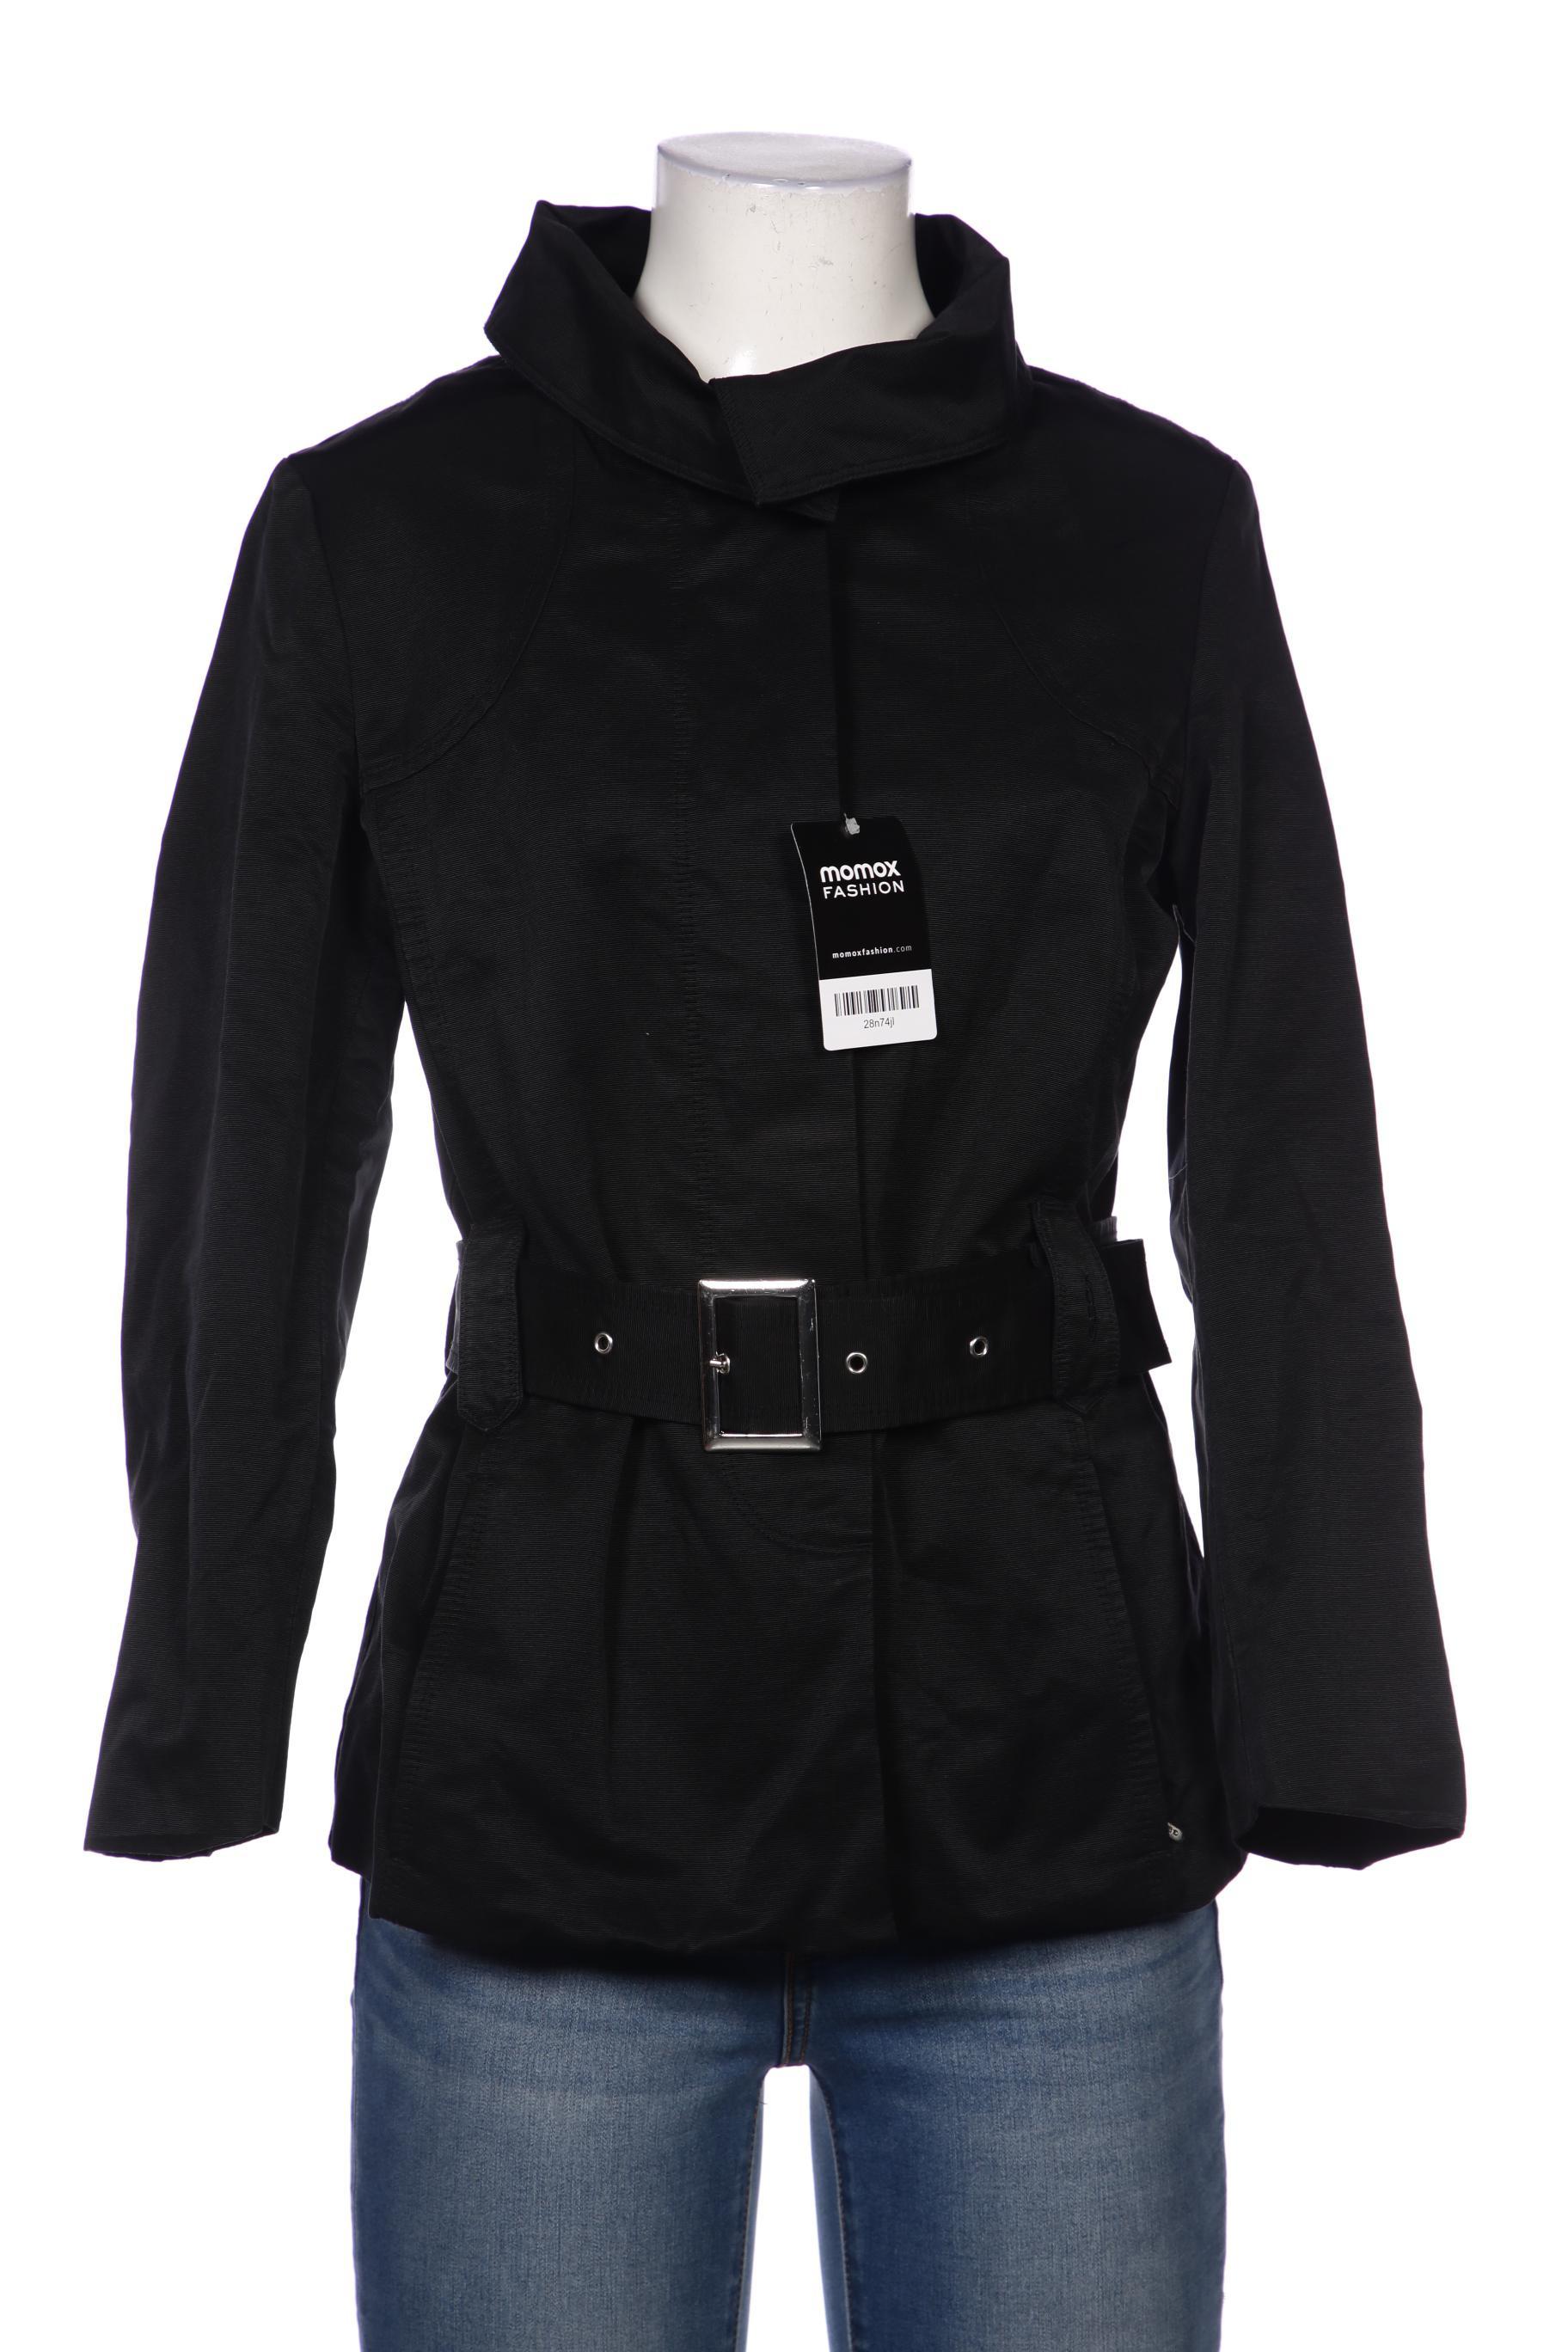 Geox Damen Jacke, schwarz, Gr. 36 von Geox